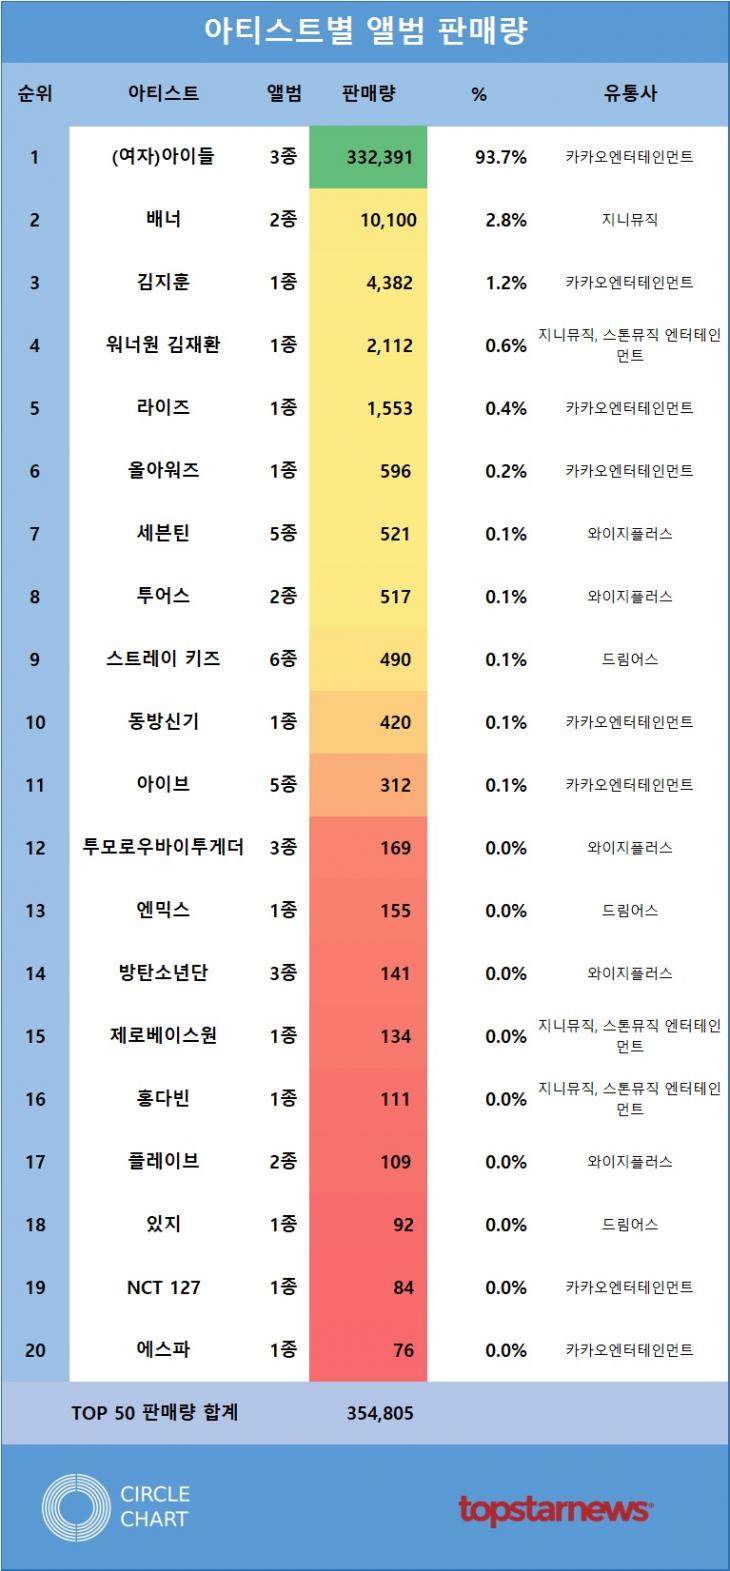 [표2] 아티스트별 앨범 판매량 TOP20